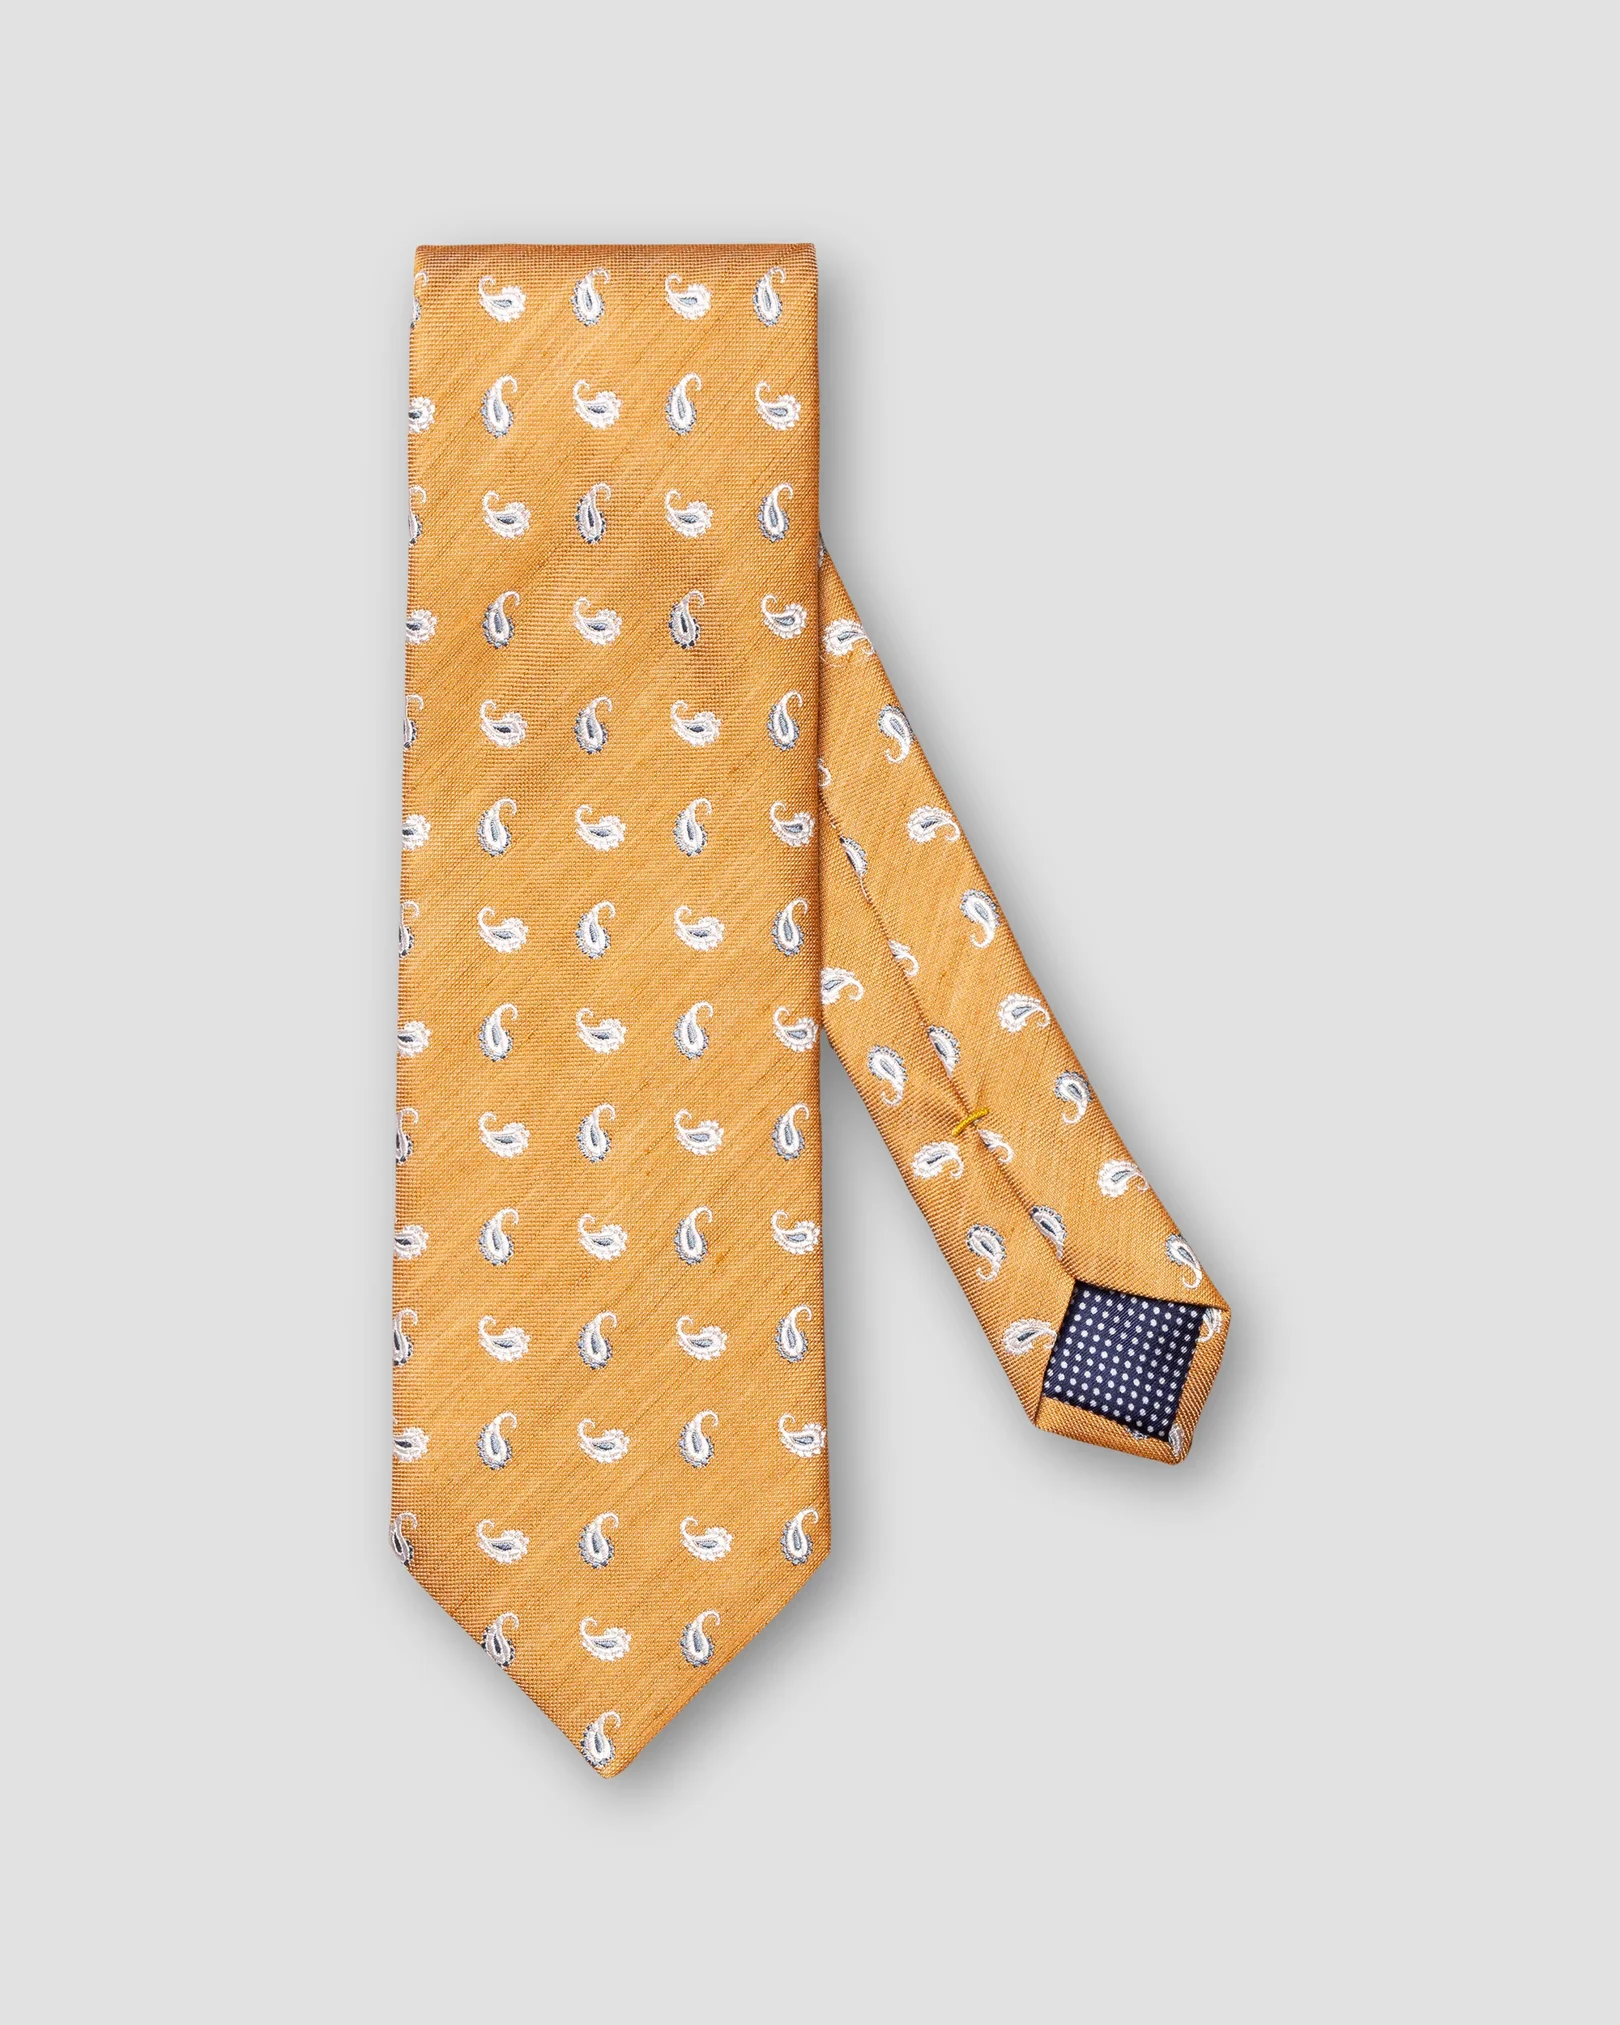 Eton - orange tie